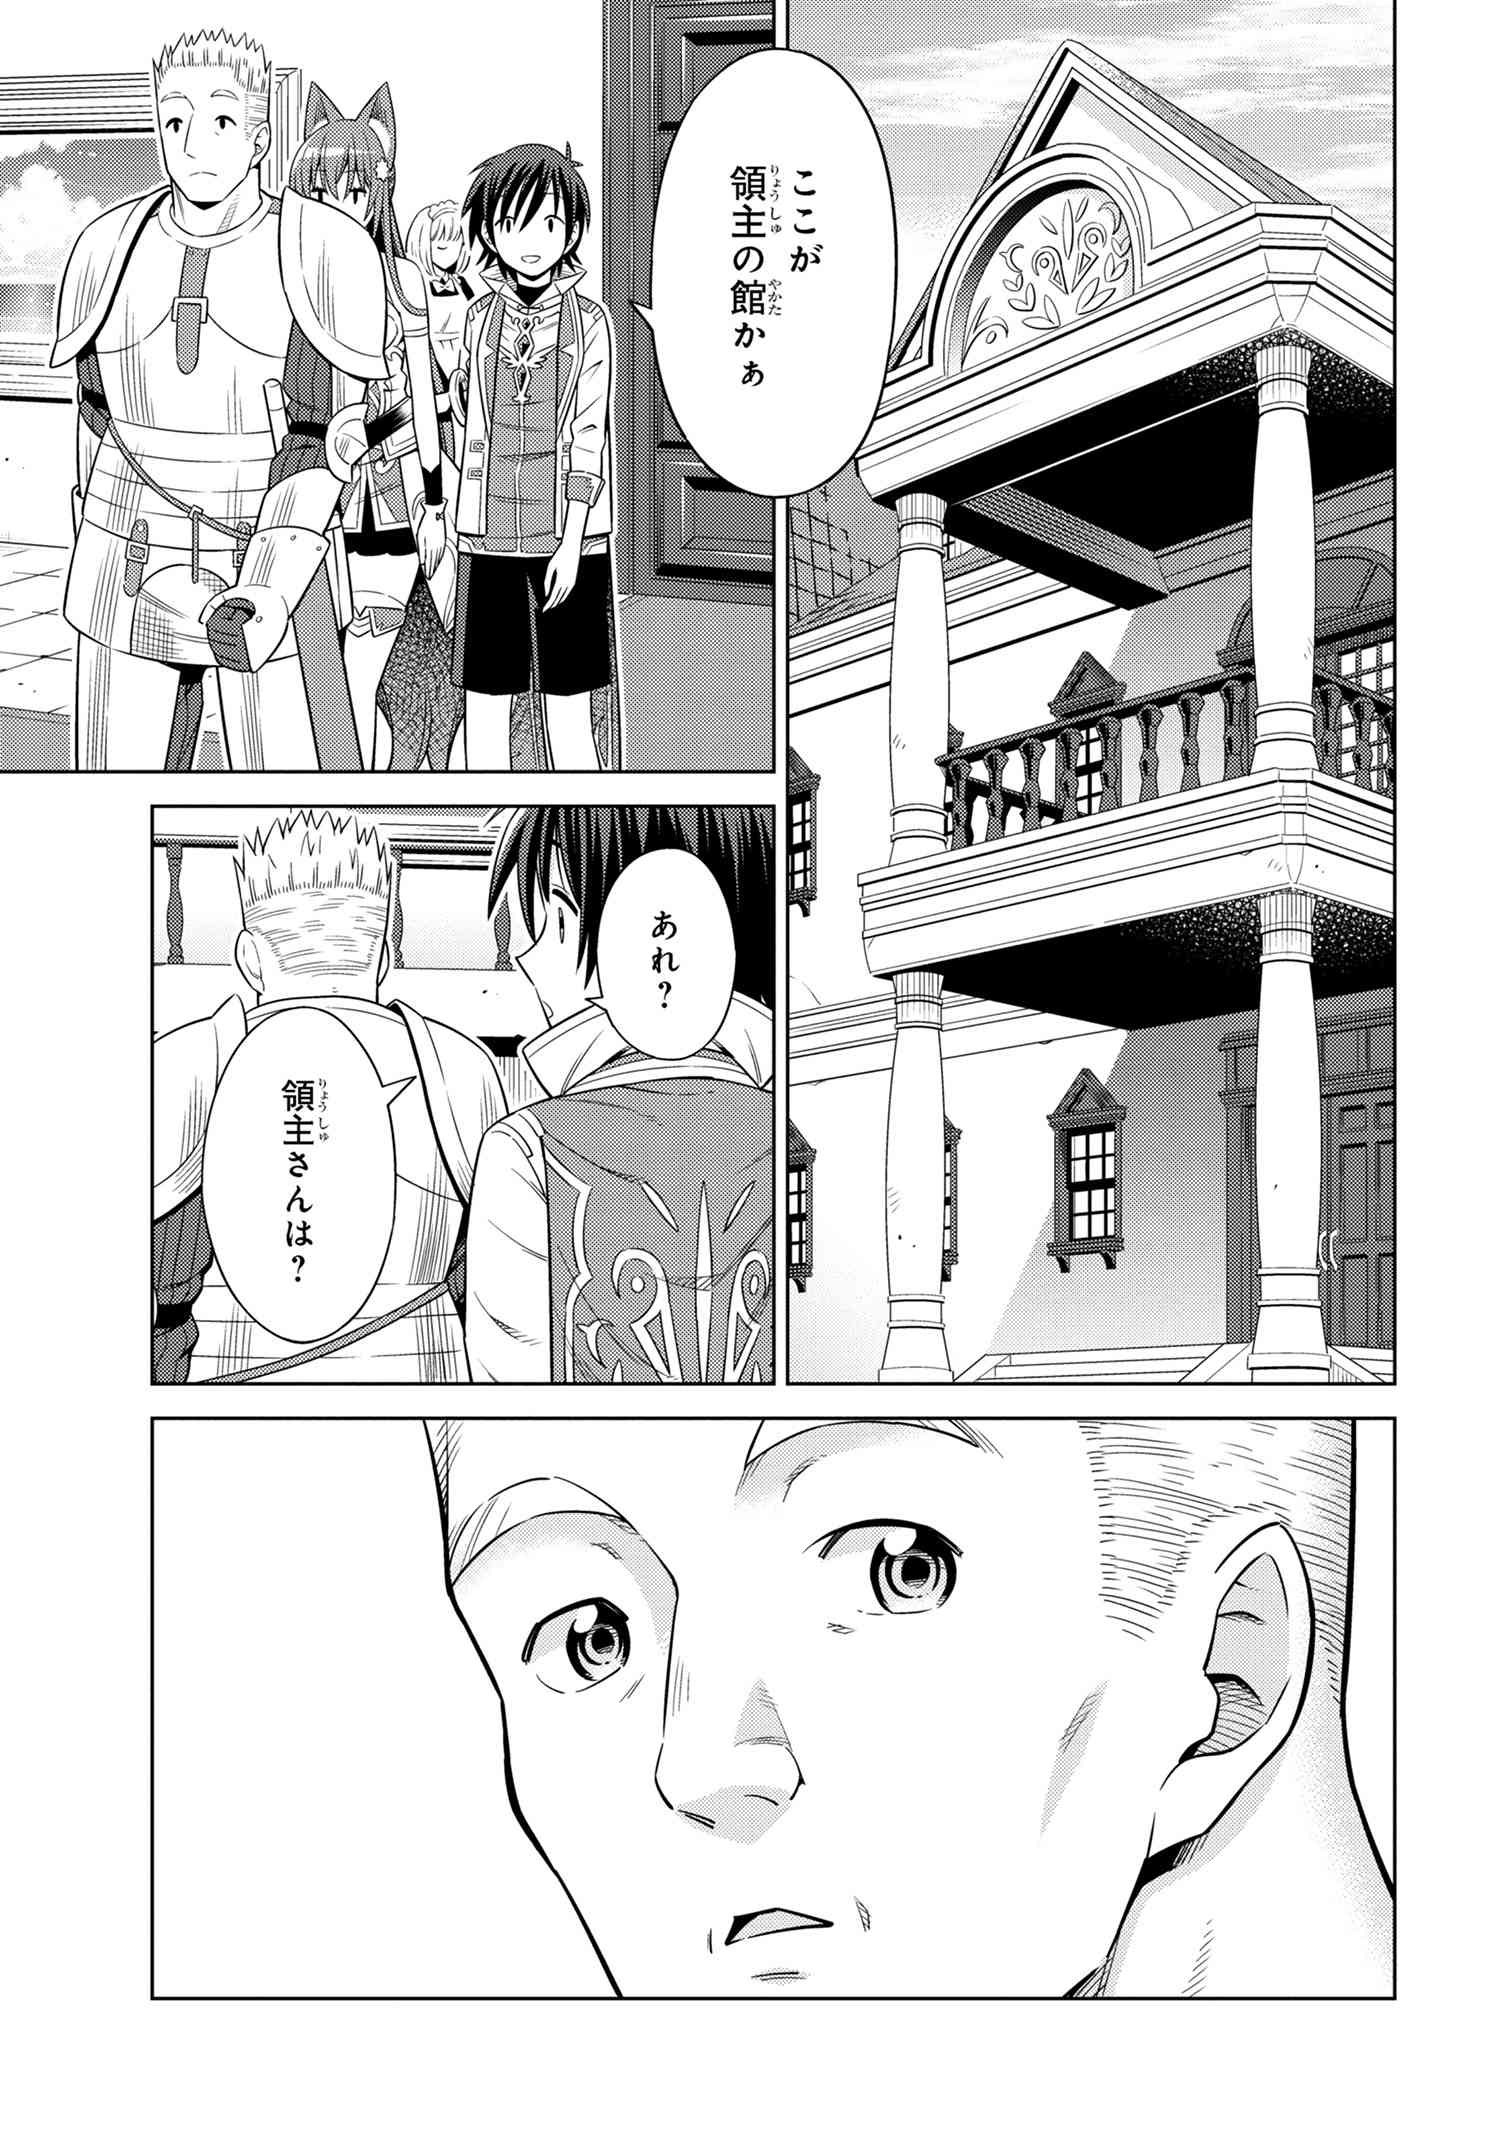 Kokuou de Aru Ani kara Henkyou ni Tsuihousareta kedo Heion ni Kurashitai – Mezase Slow Life  - Chapter 3.2 - Page 15